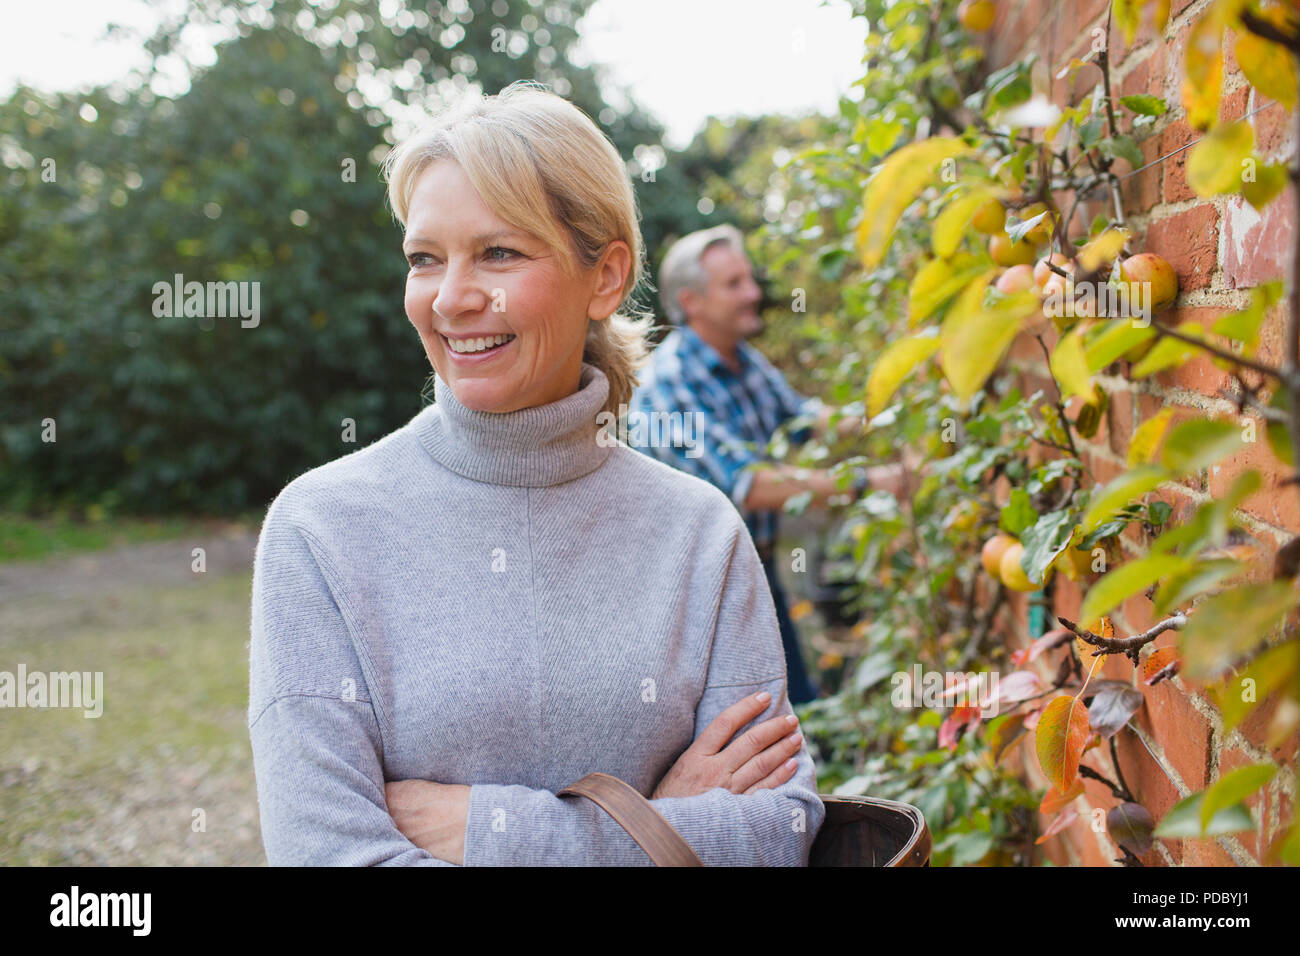 Ritratto felice, fiducioso donna matura la raccolta di mele in giardino Foto Stock